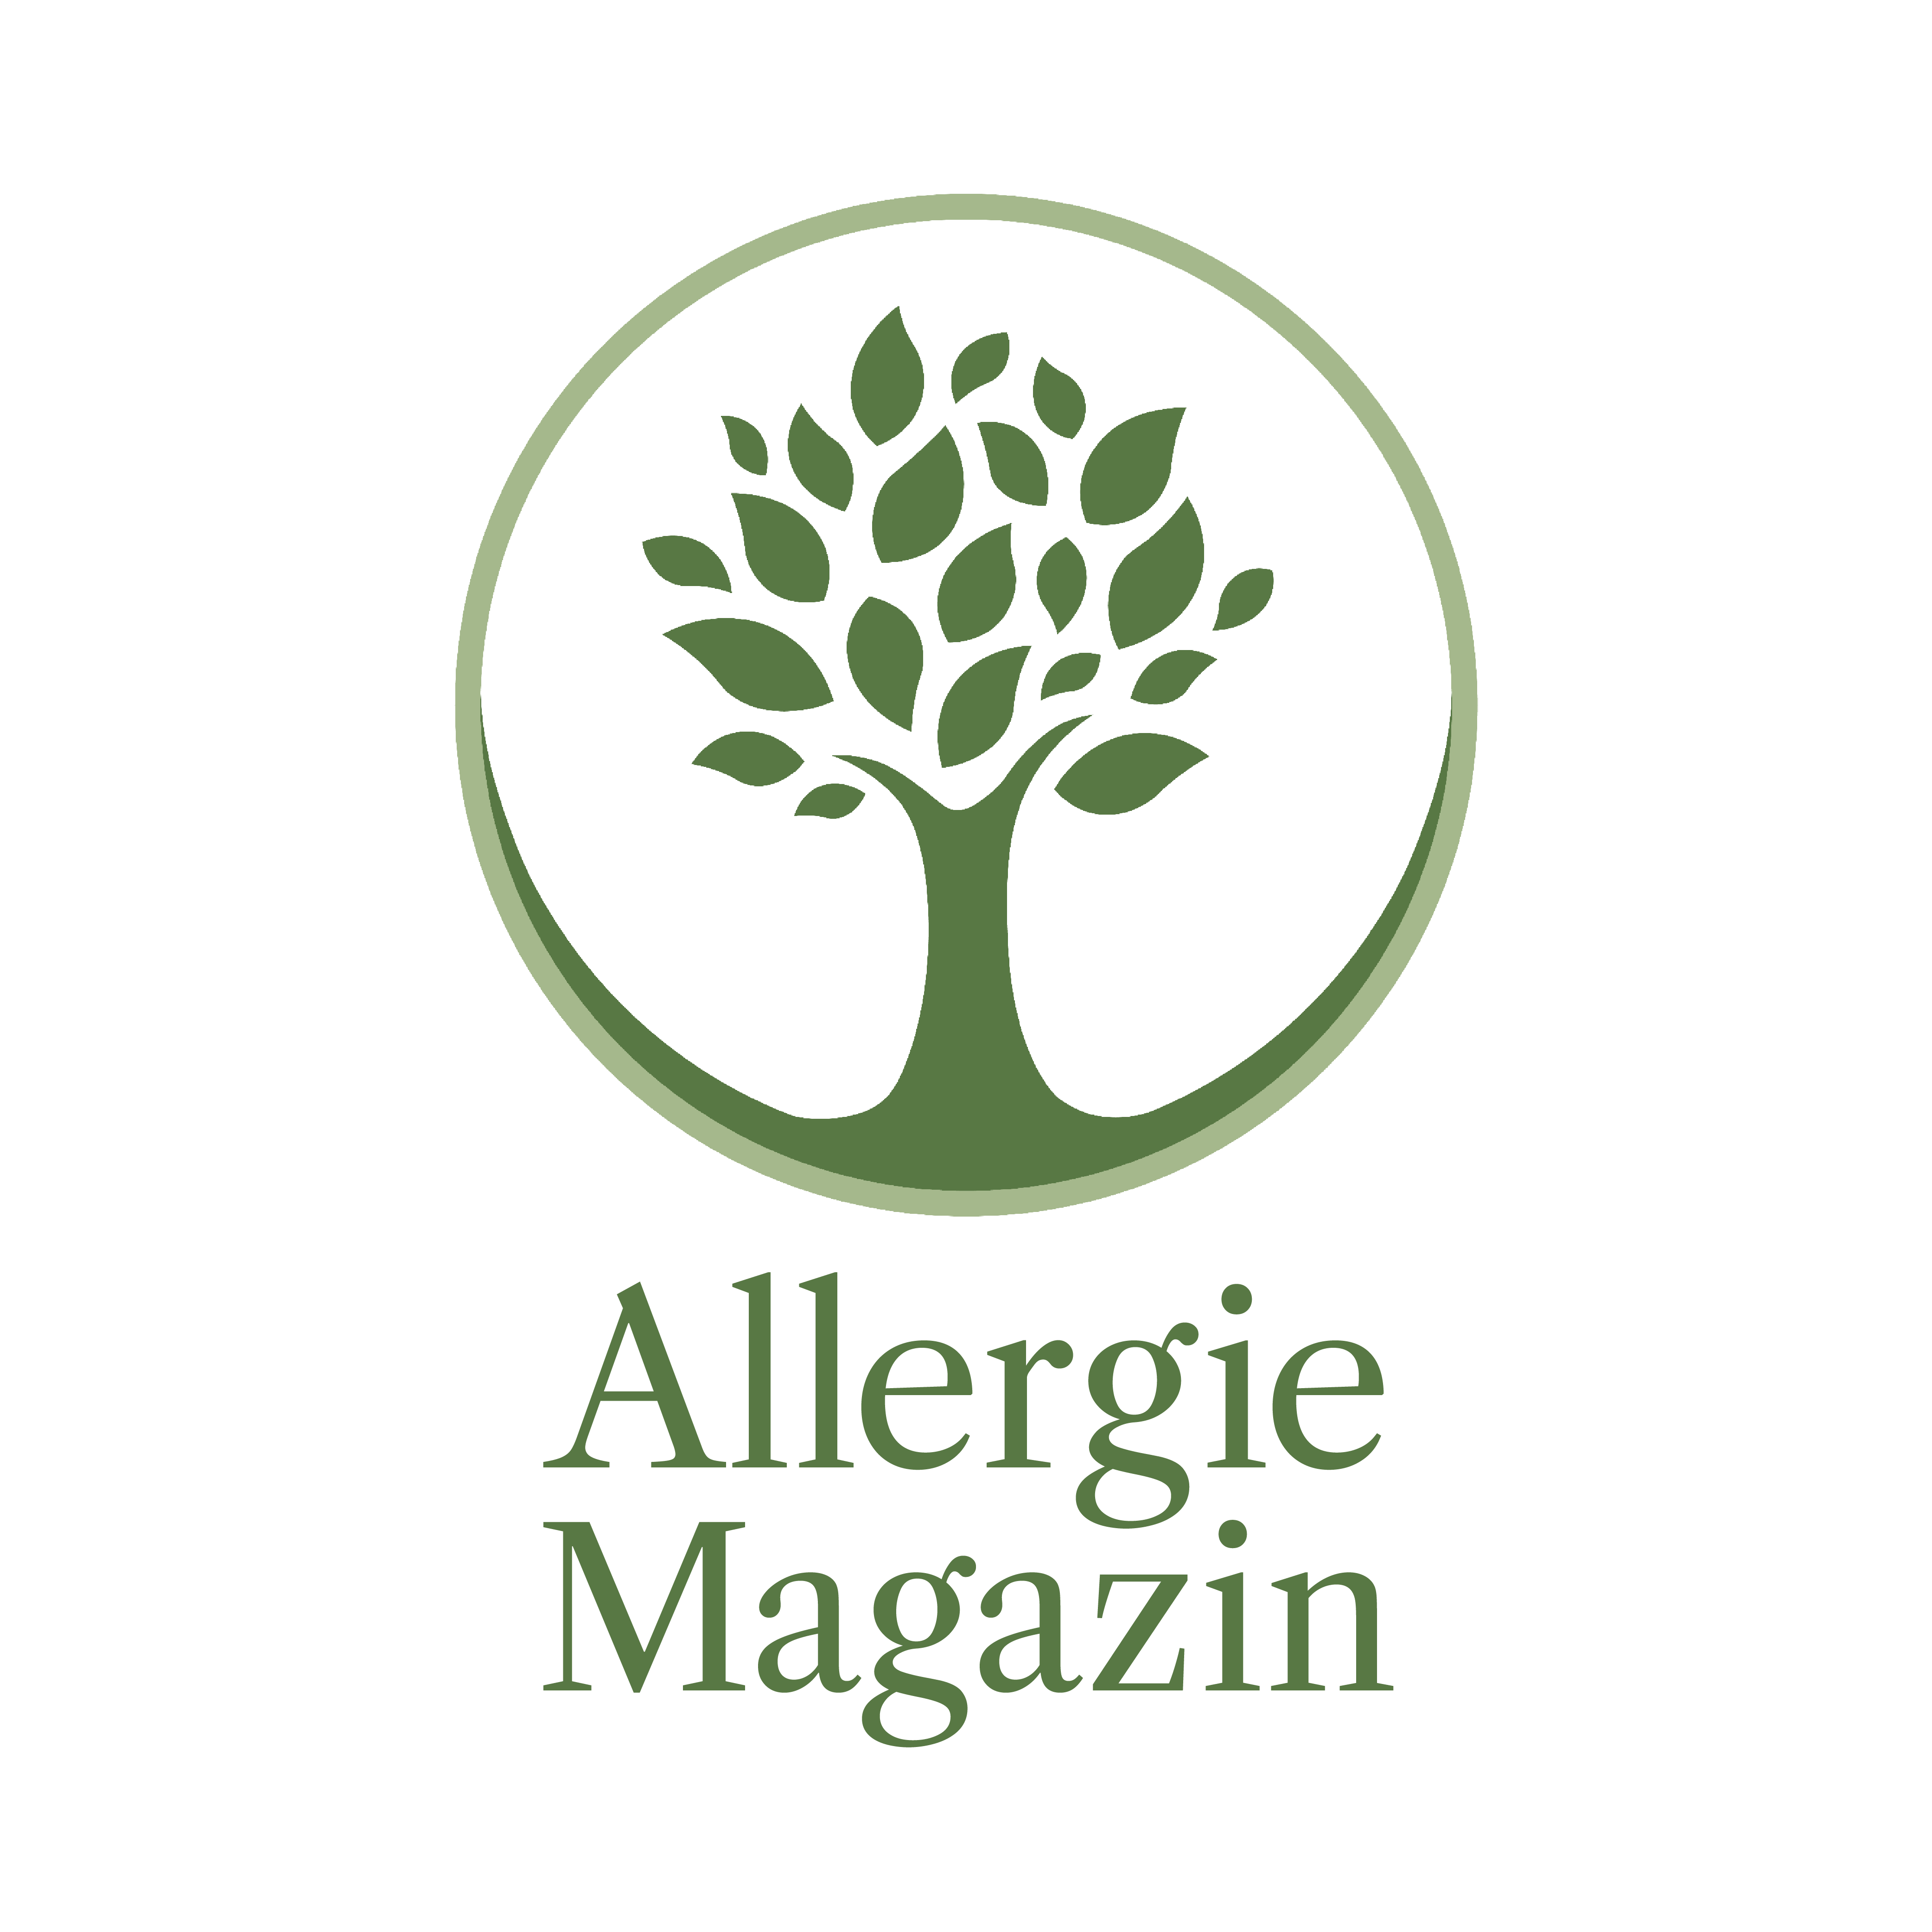 Allergiemagazin